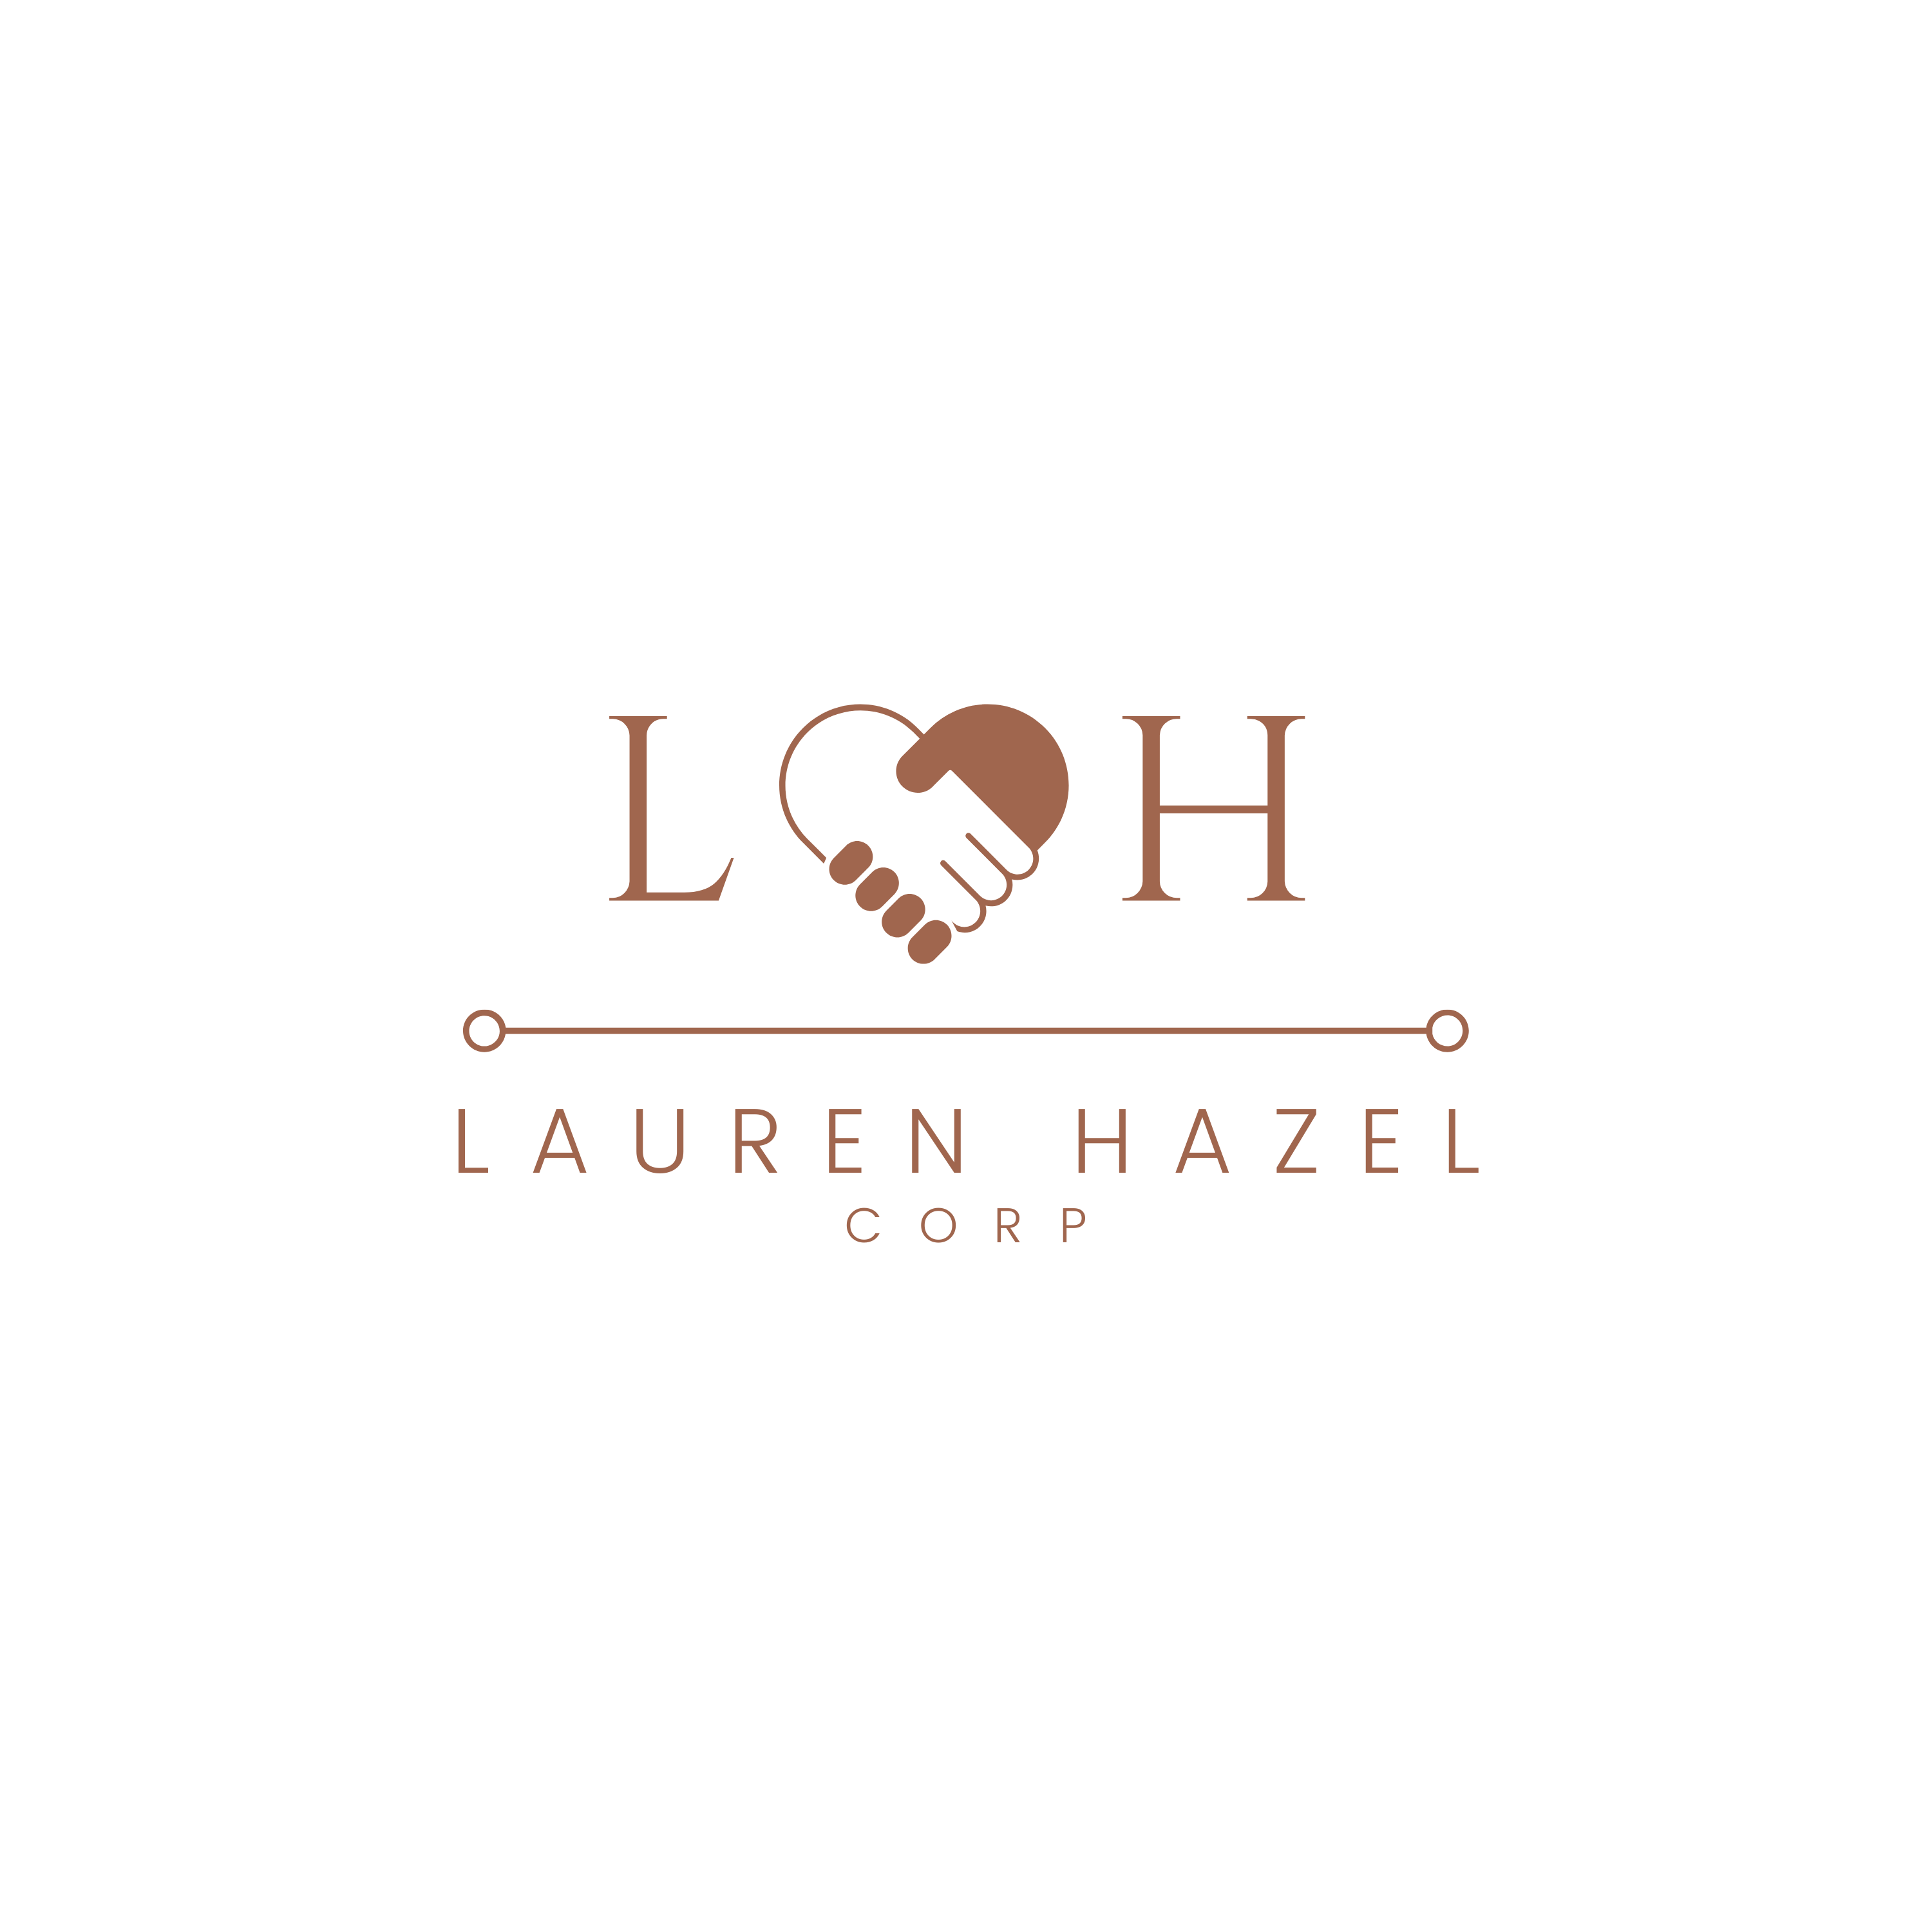 Lauren Hazel Corp